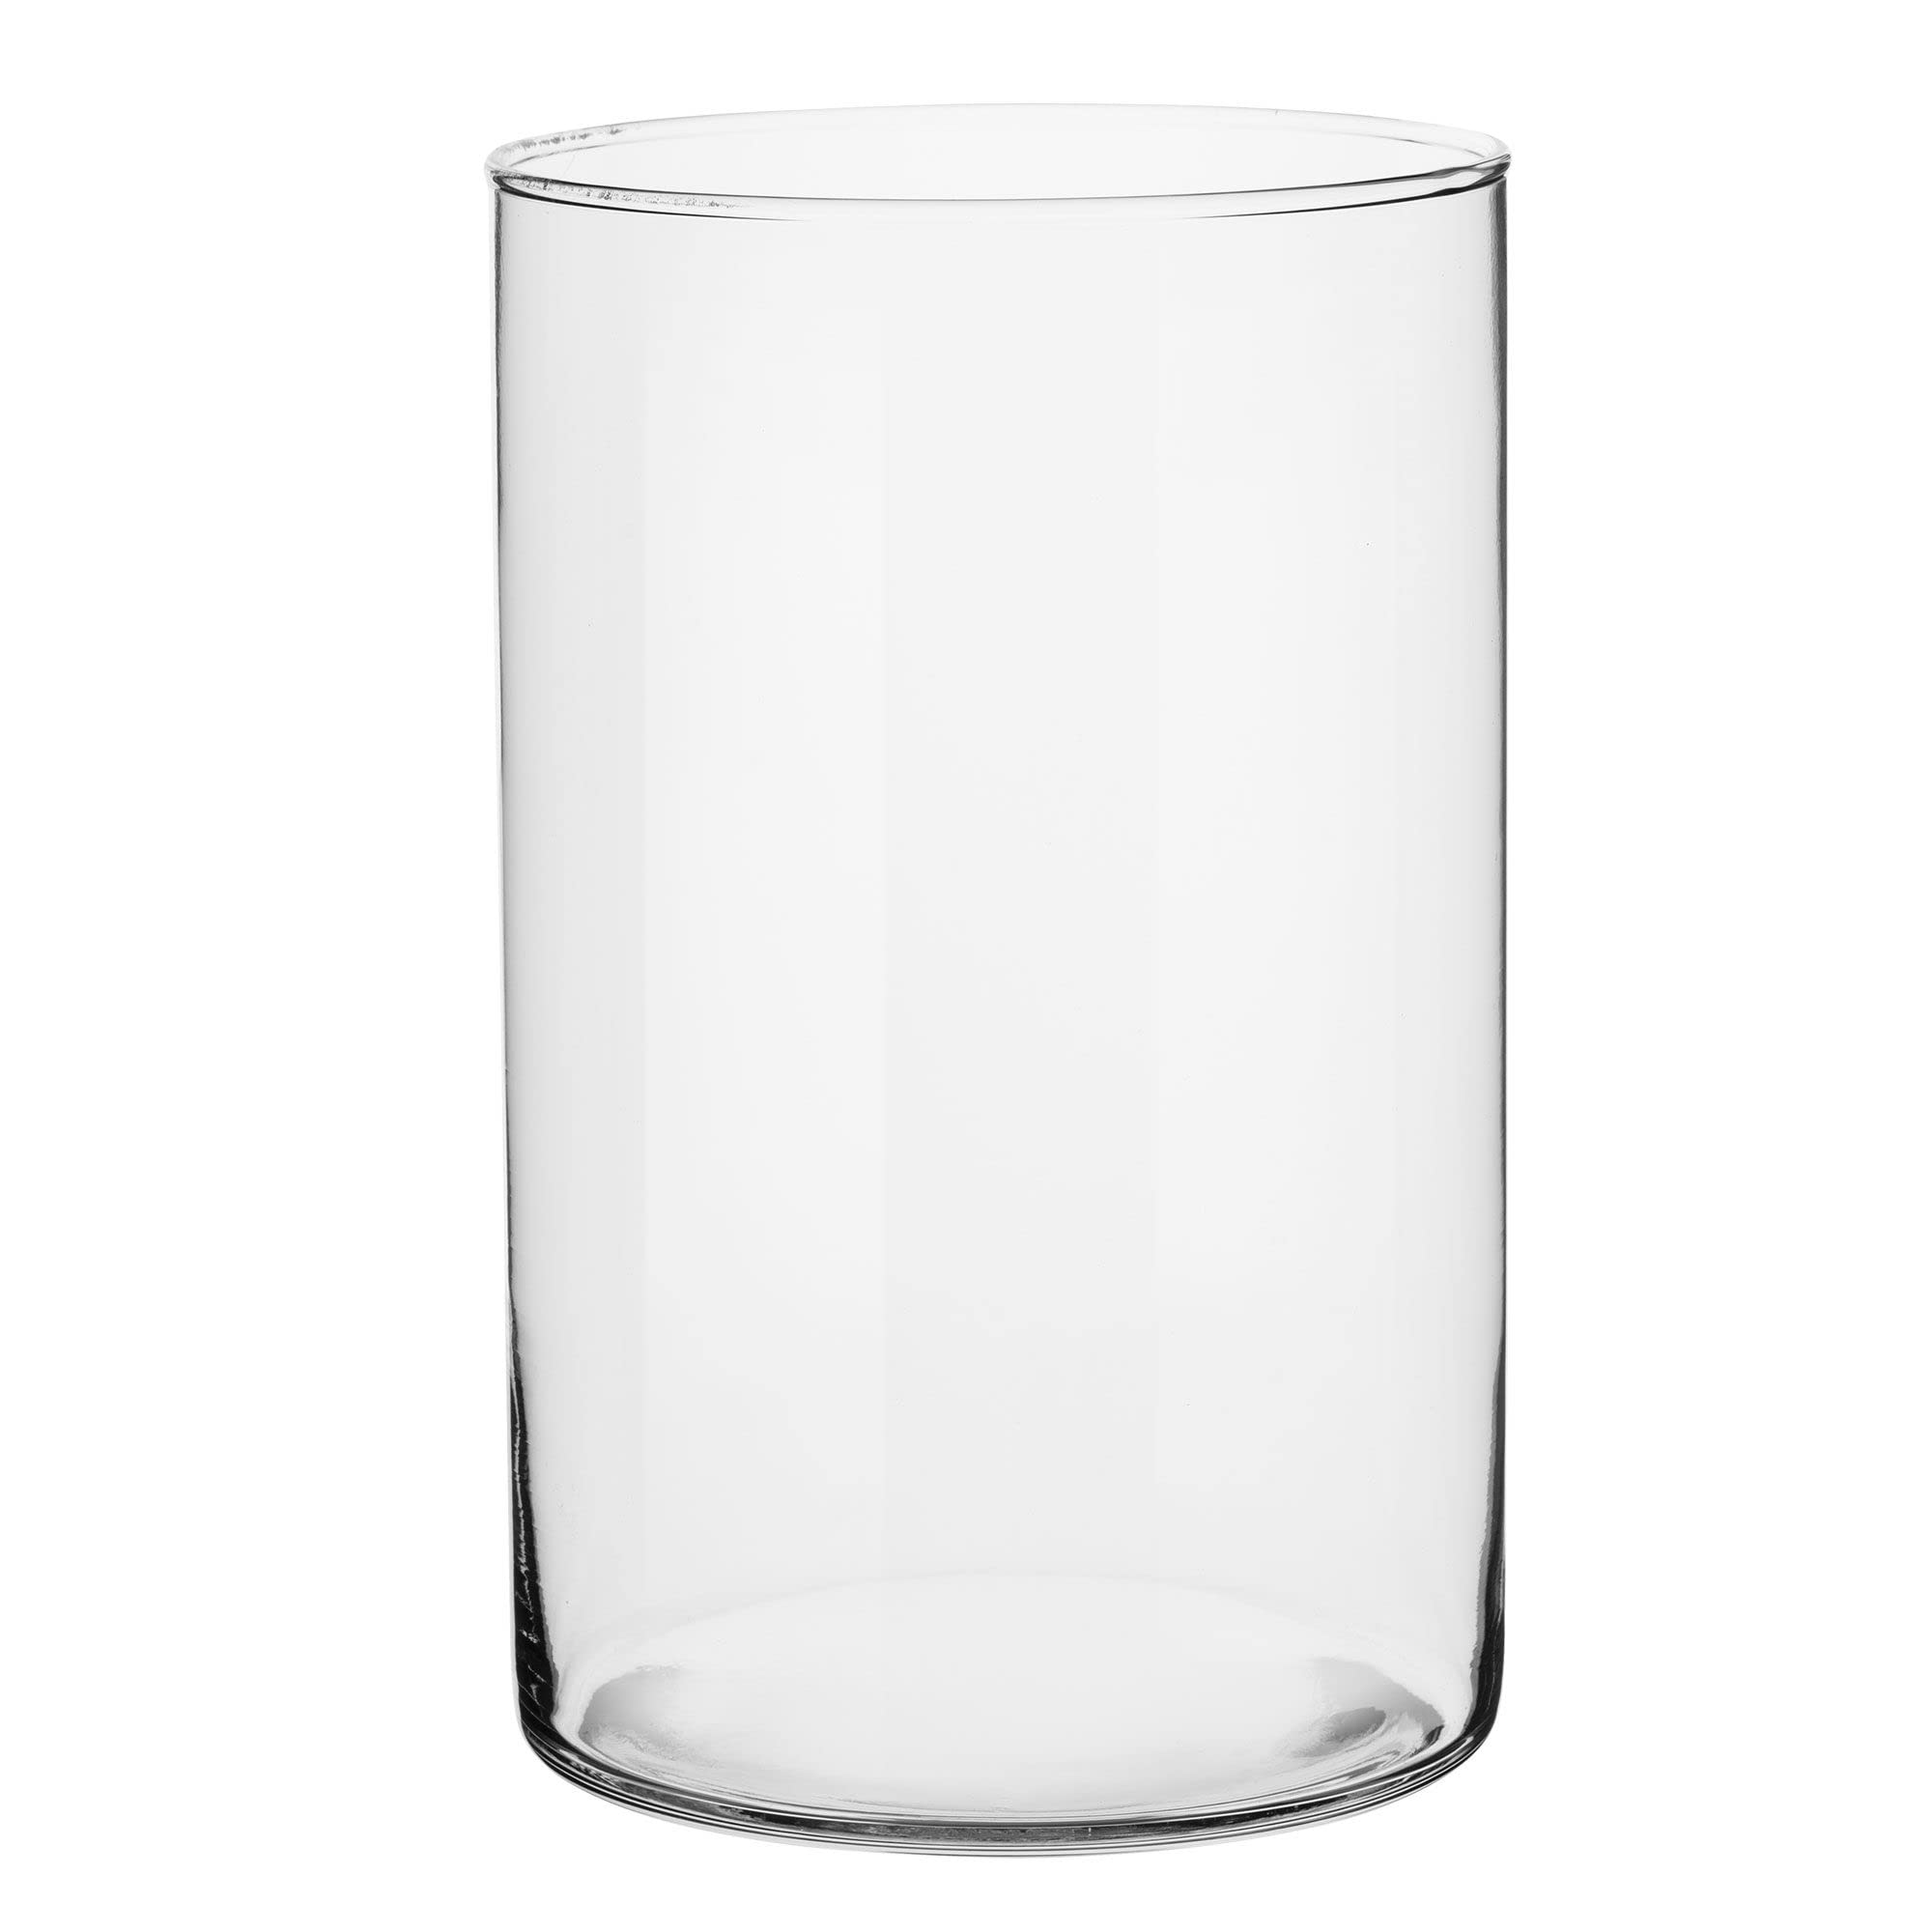 vente chaude TREND FOR HOME Vase Decoratif 21.5 cm Grand Transparent Haut Cylindrique en Verre pour Centre de Table Mariage Maison Cérémonie Pampa pour Fleurs | Ø 13.5 cm | sIDM3fdfs mode